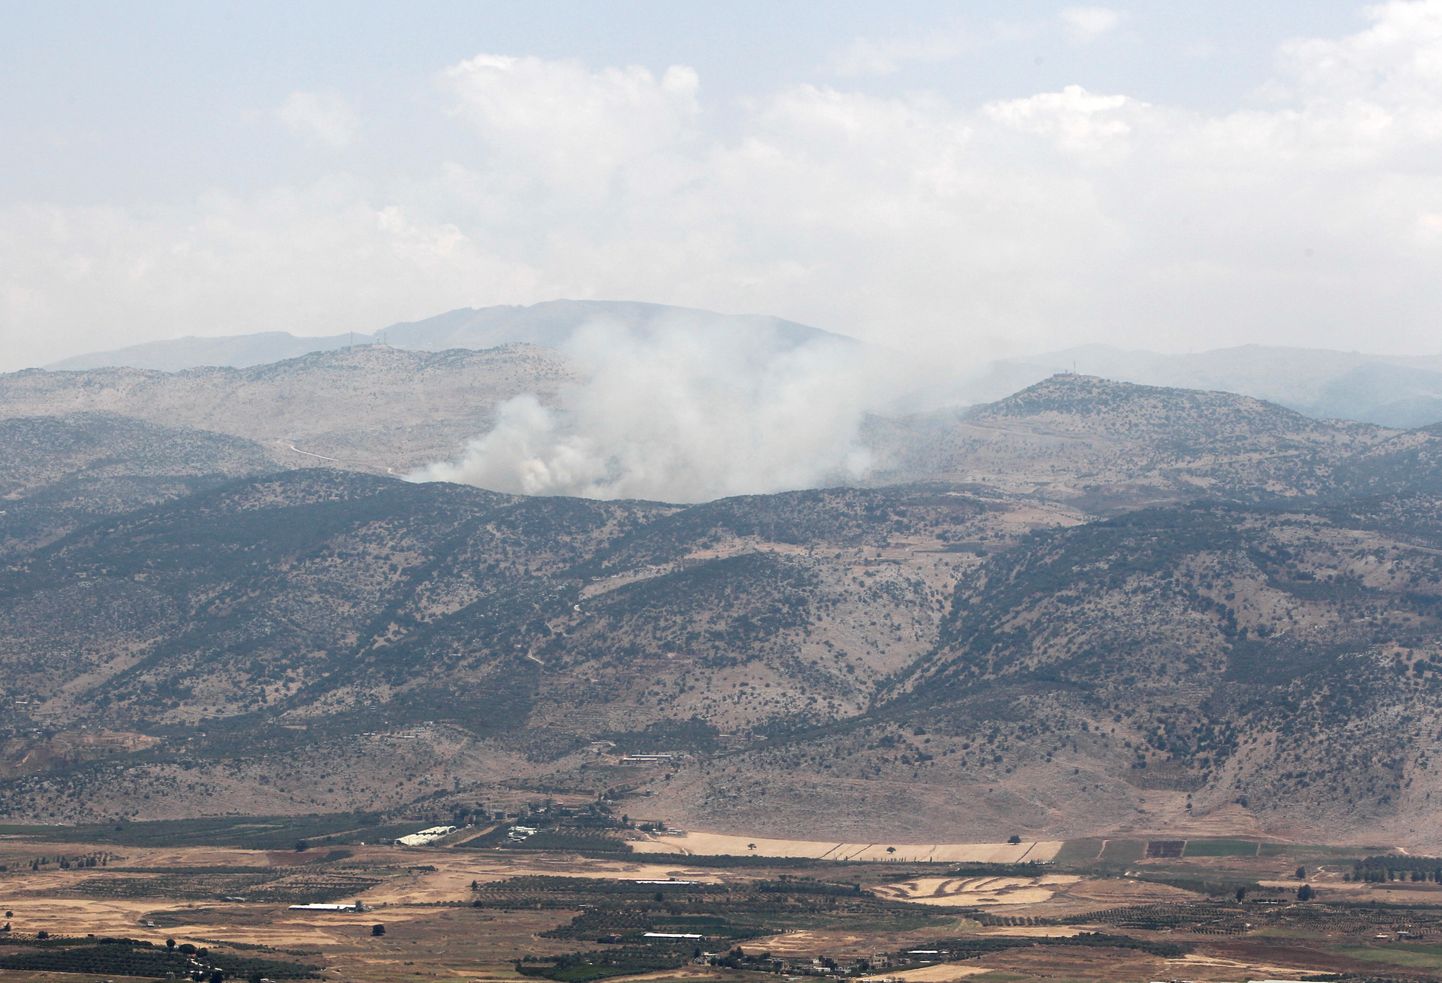 Suits tõusmas Liibanoni-Iisraeli piiri lähedal asuvast Wazzani külast Liibanonis.